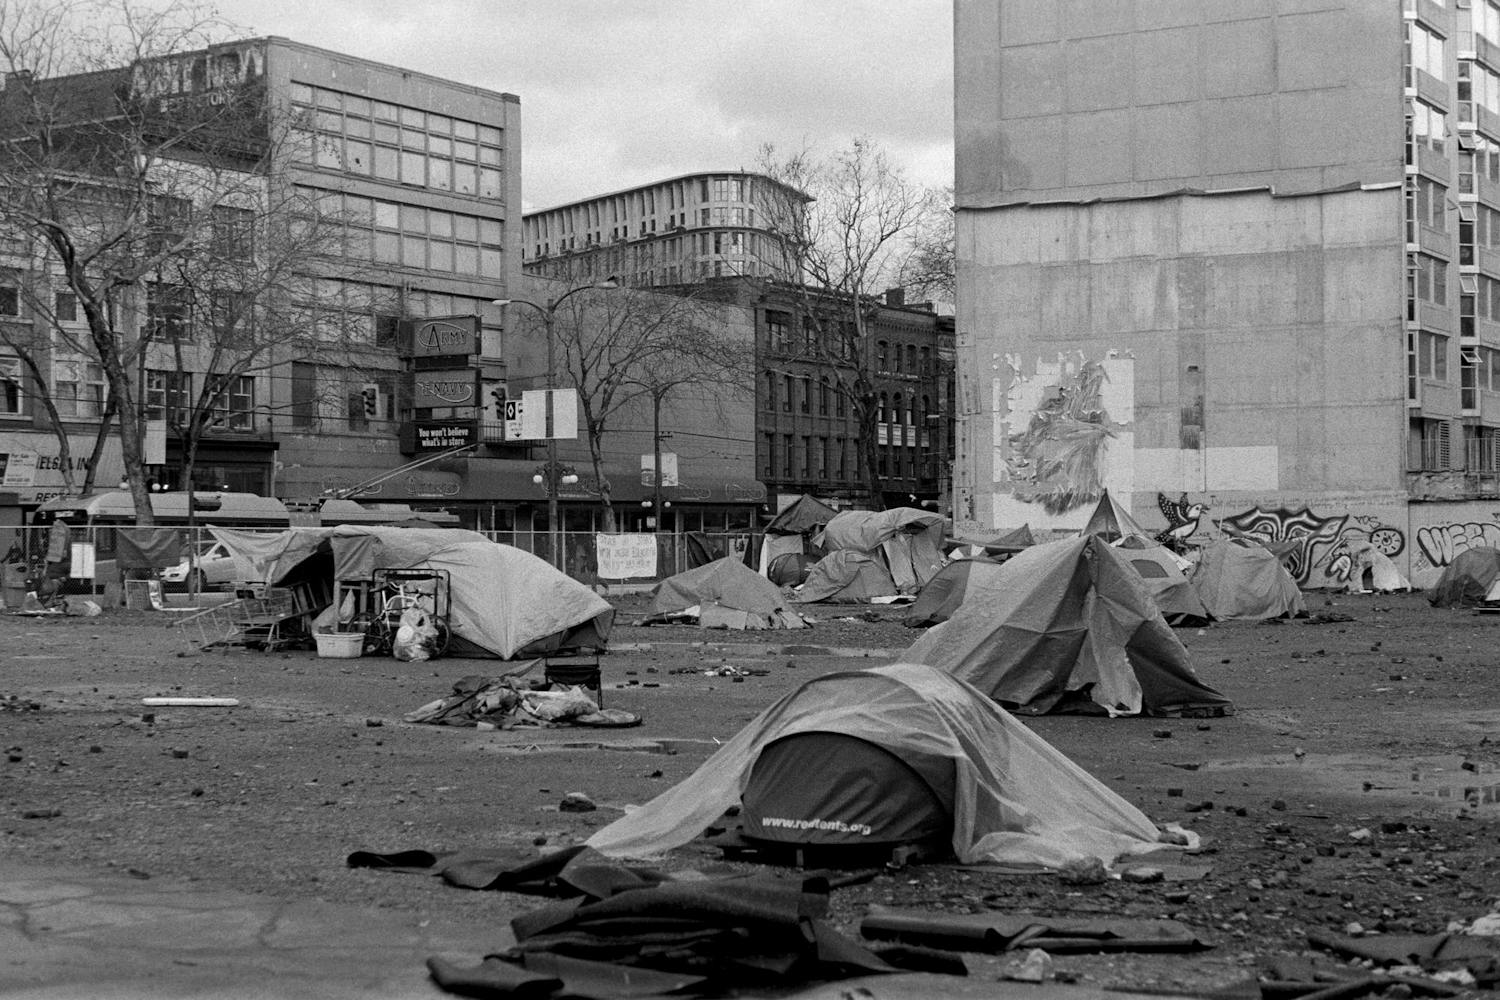 Homeless Encampment Unsplash.jpg